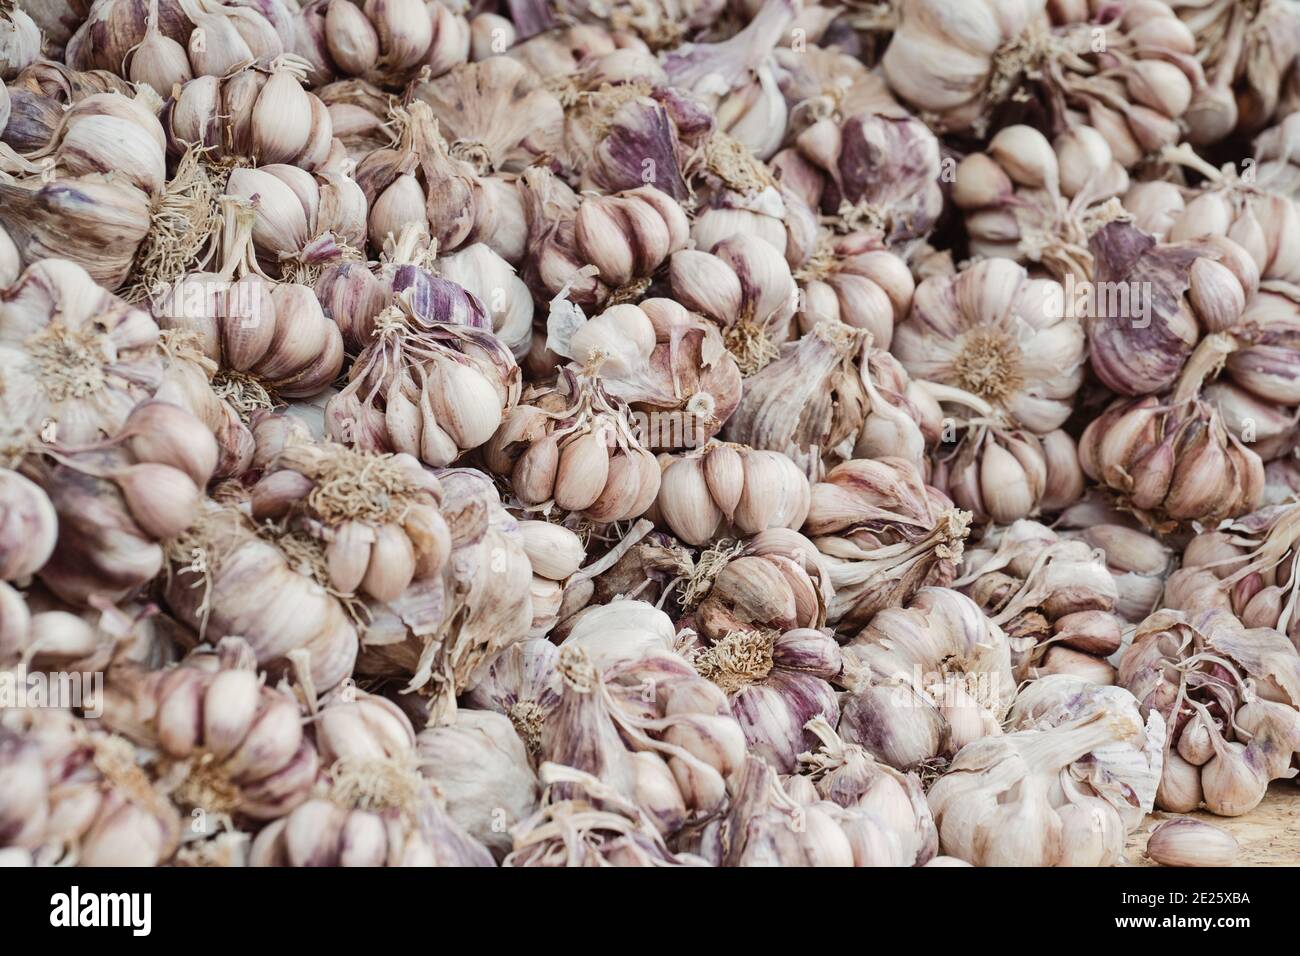 Full frame of garlic bulbs Stock Photo